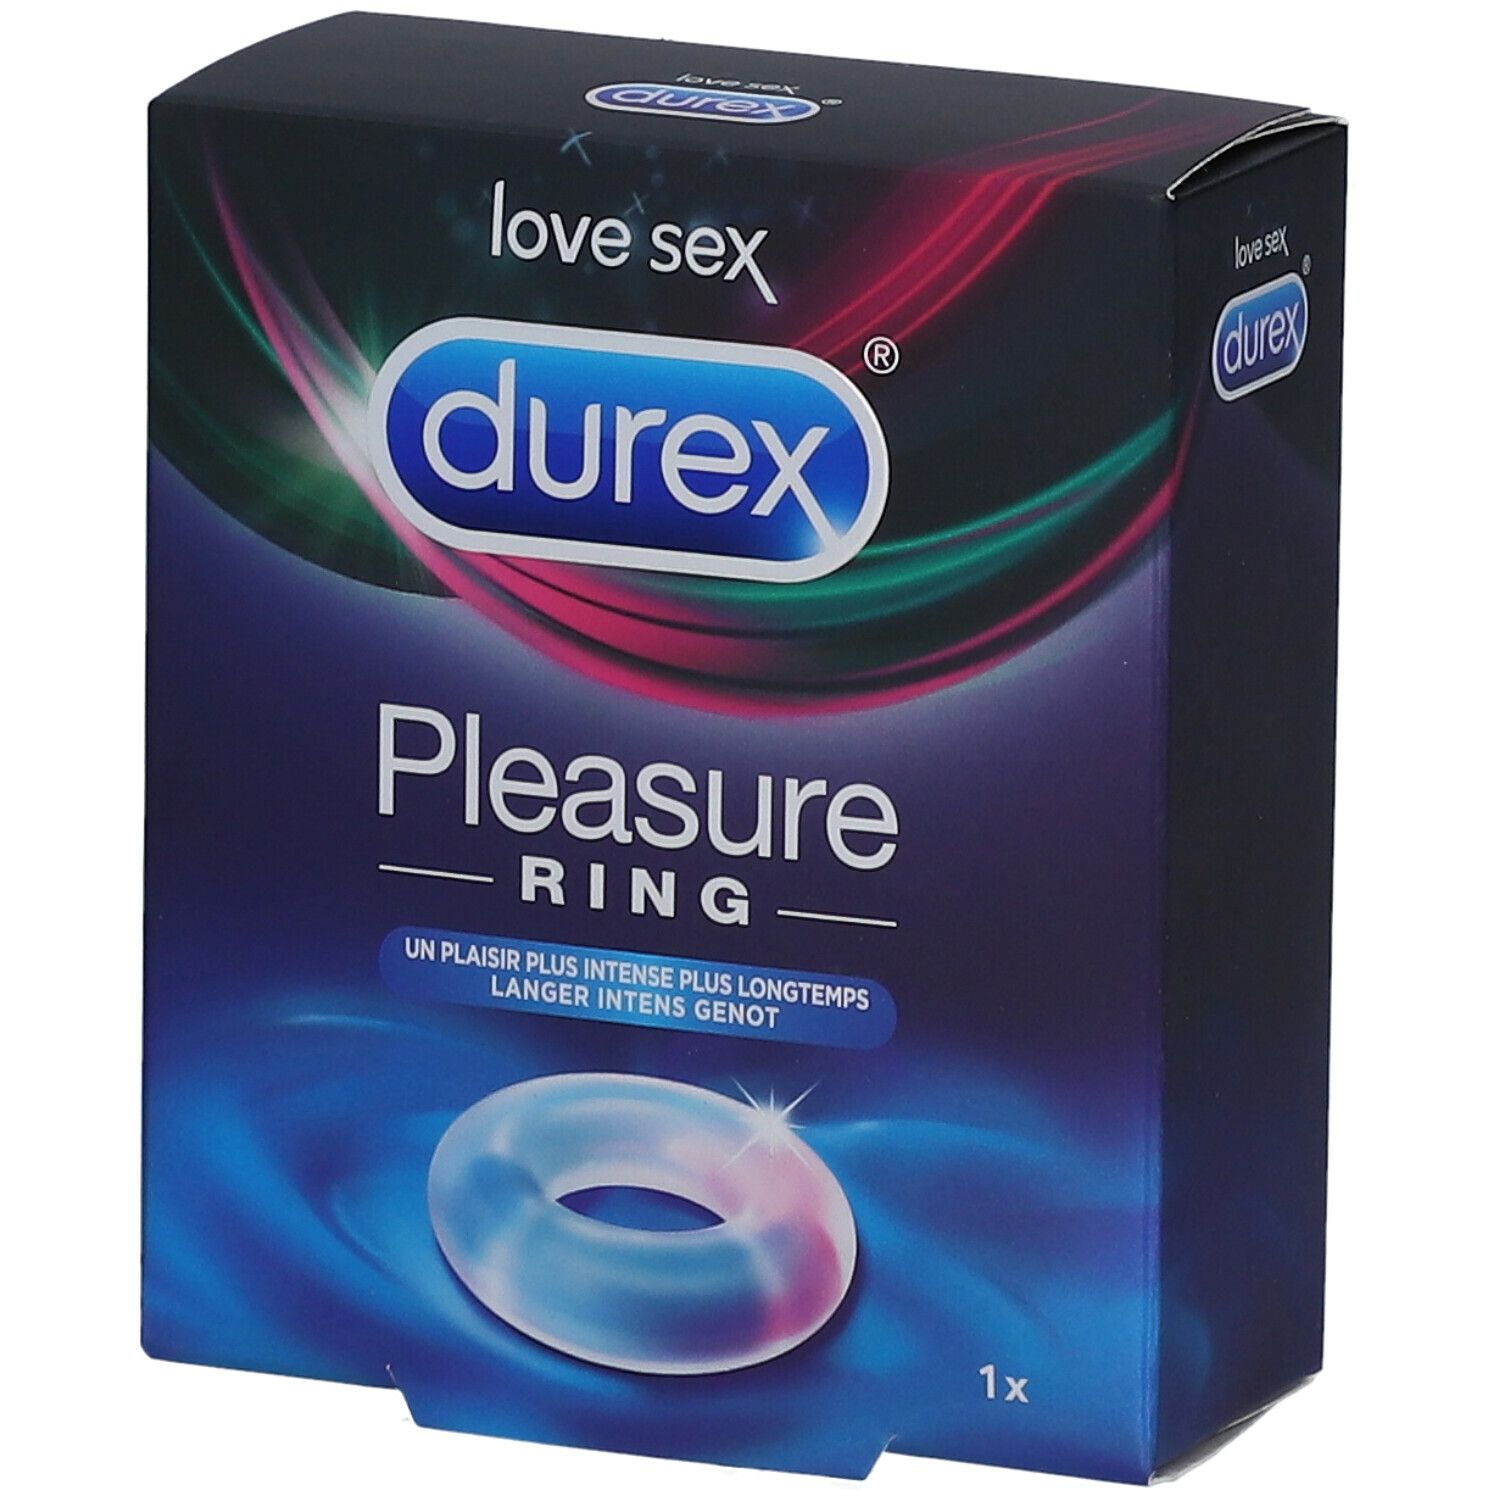 Anneau Durex Pleasure, 1 unité – Durex : Accessoires